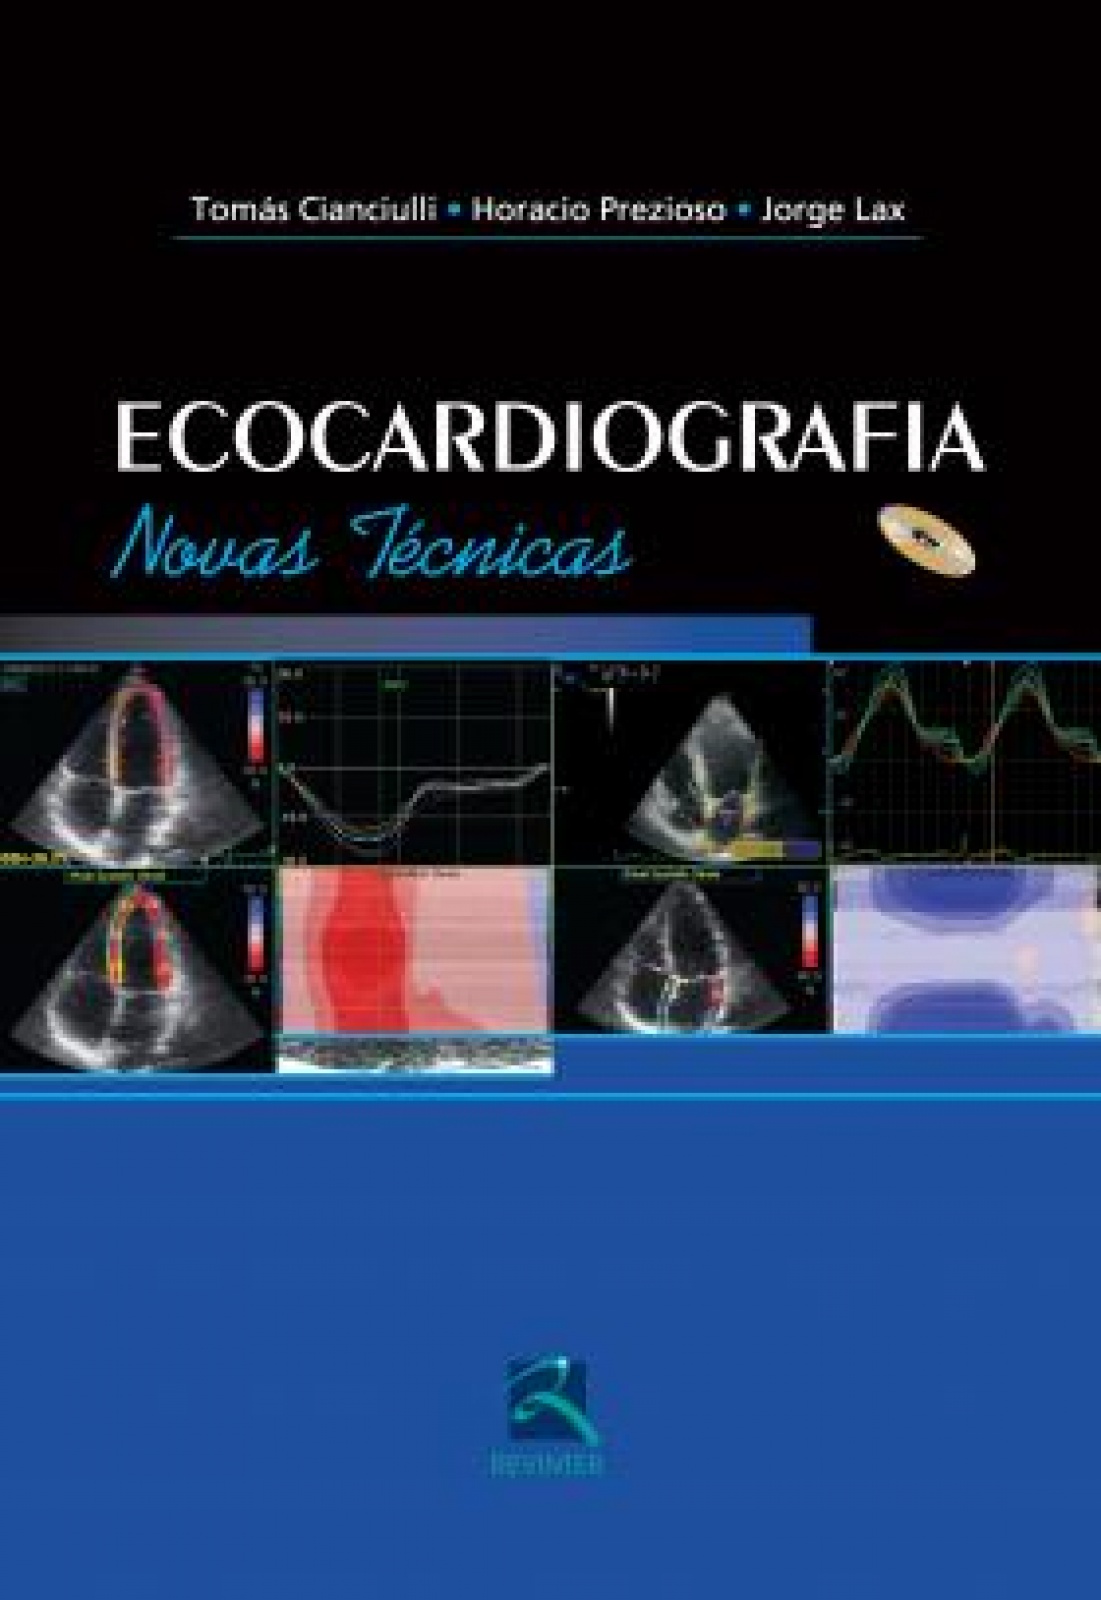 Ecocardiografia Novas Técnicas